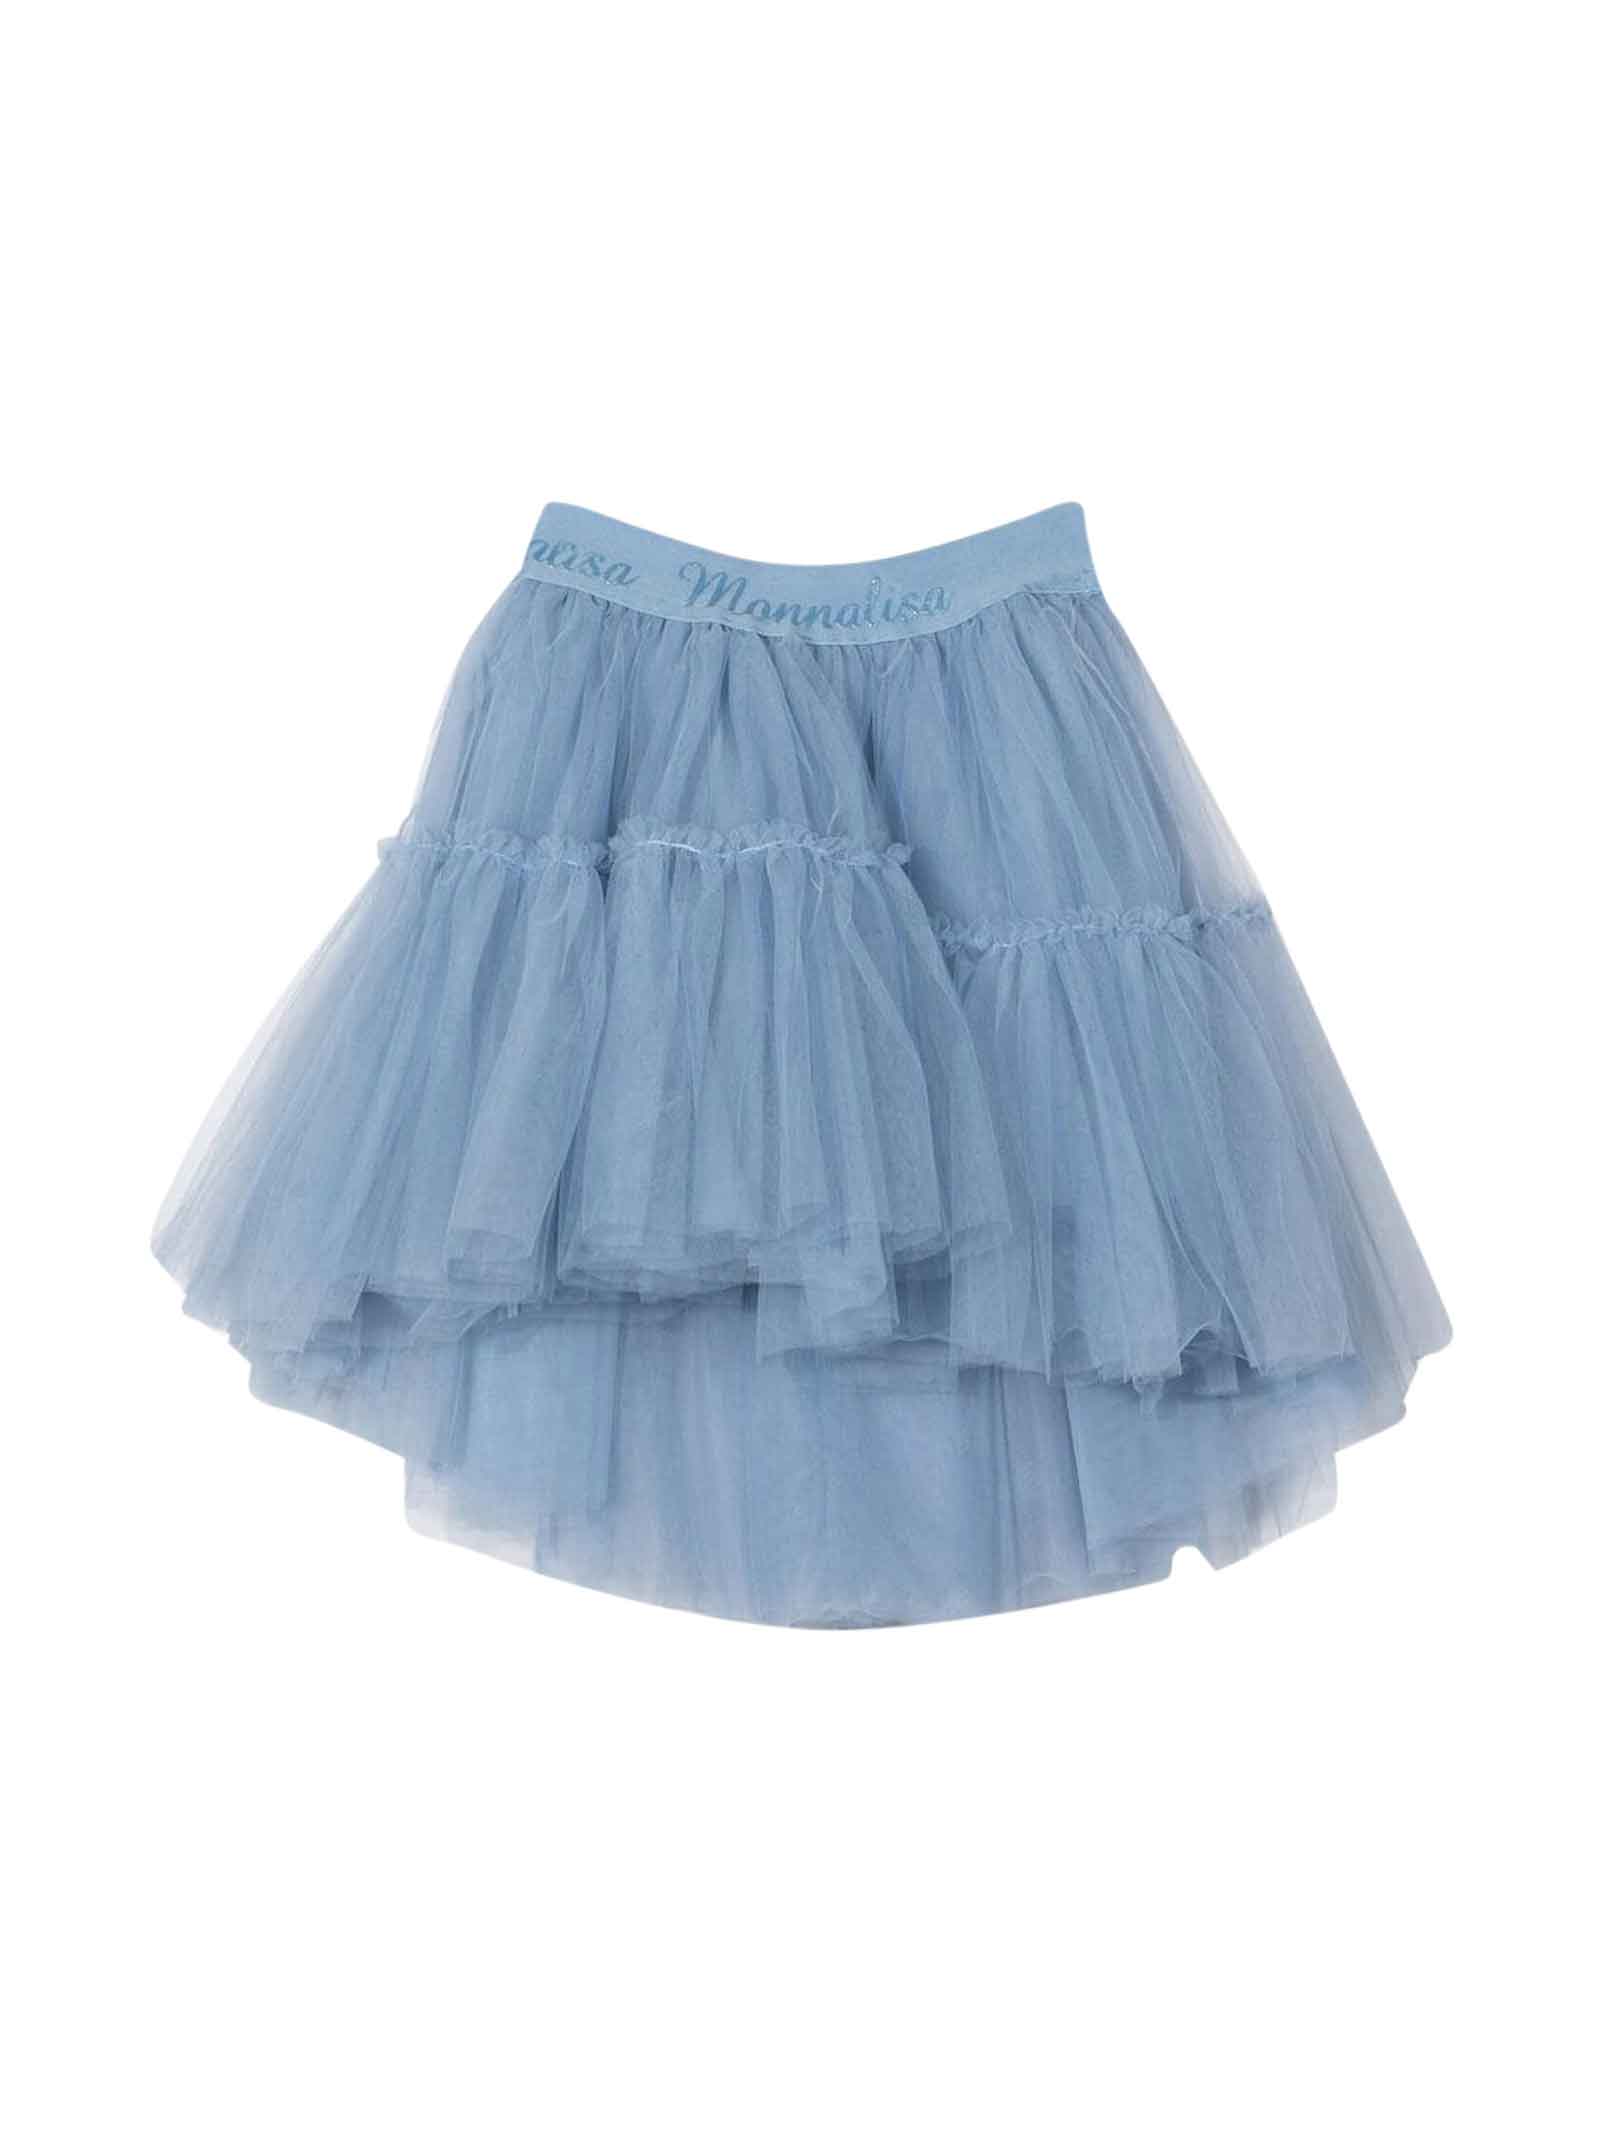 Monnalisa Light Blue Tulle Skirt